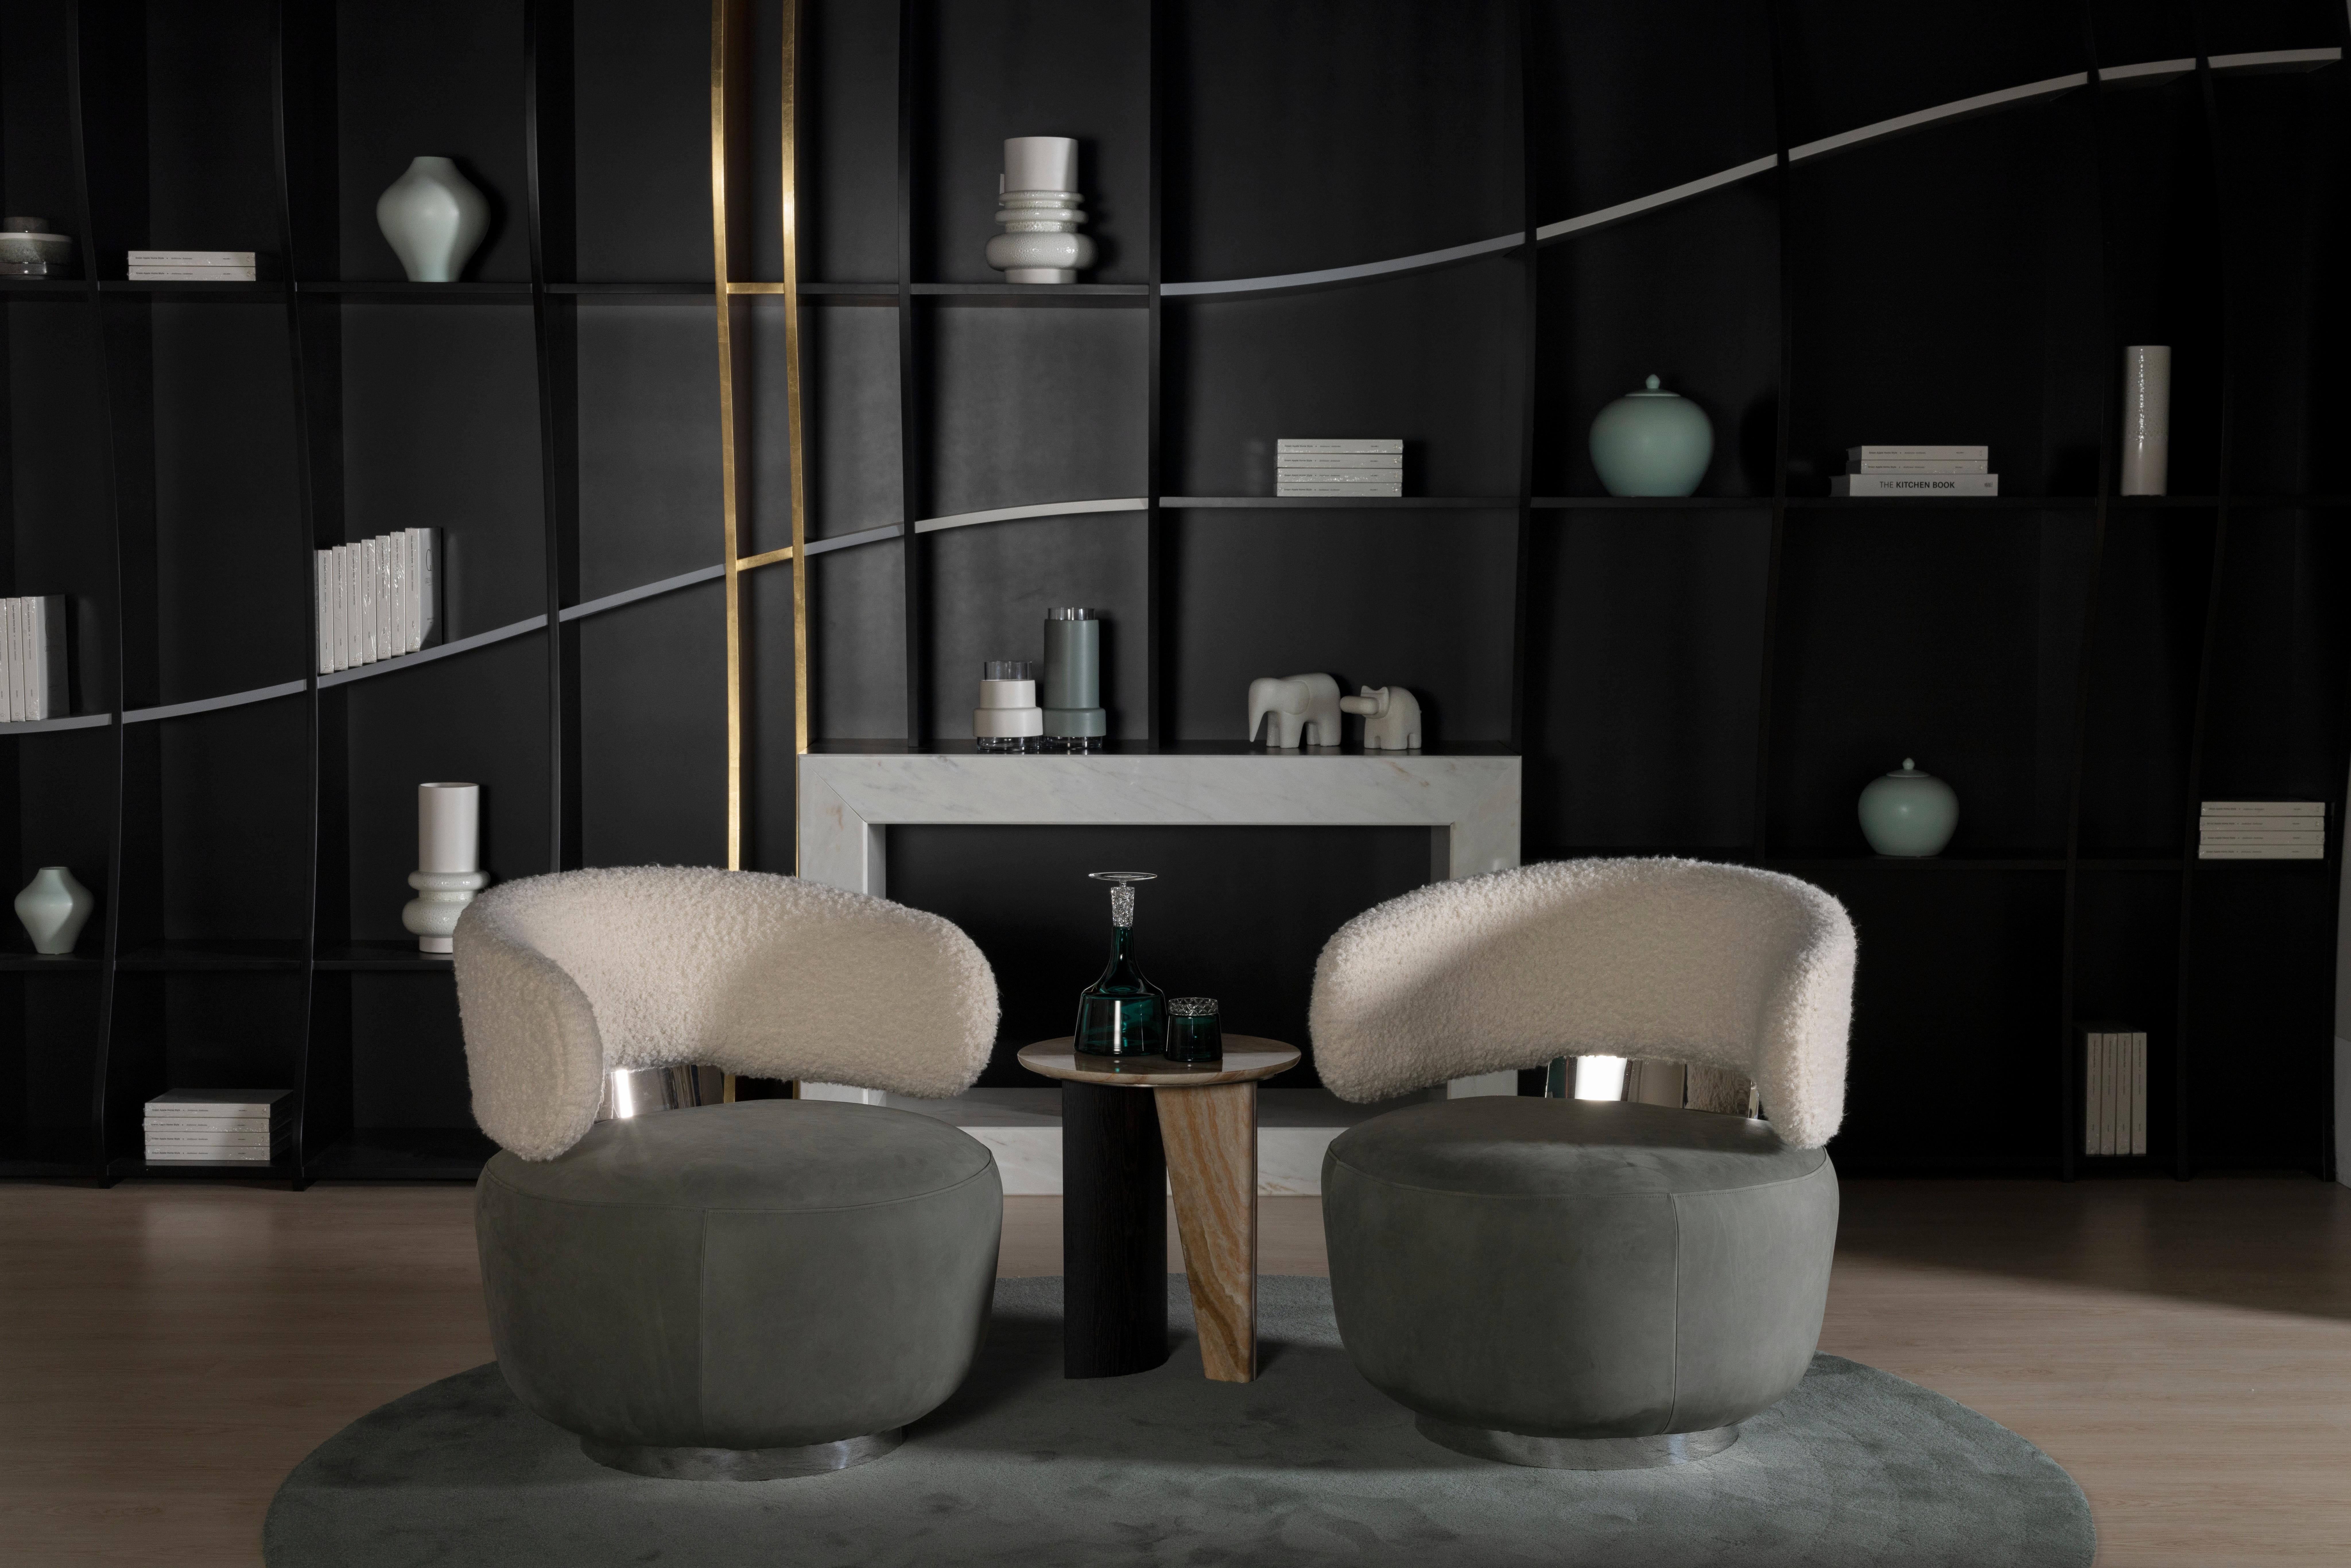 Caju Swivel Lounge Chair, Contemporary Collection, Handcrafted in Portugal - Europe by Greenapple.

La chaise longue Caju est un meuble tendance qui personnifie la forme organique d'un cajou. Tapissé de laine bouclée et de cuir italien, le design de